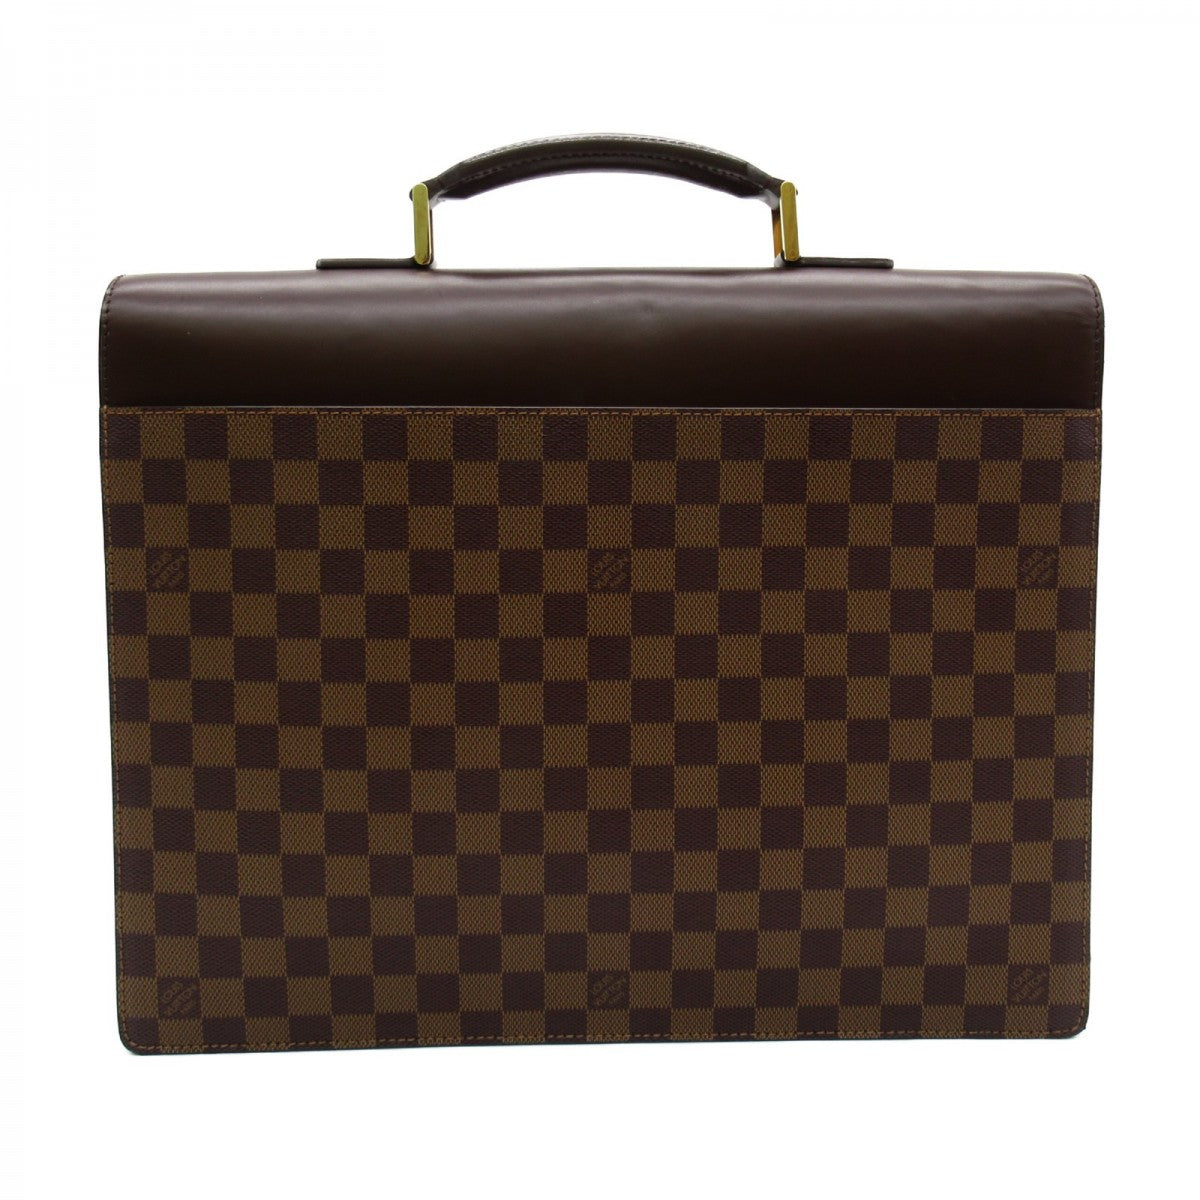 Louis Vuitton Damier Ebene Altona PM Canvas Business Bag N53315 in Excellent condition